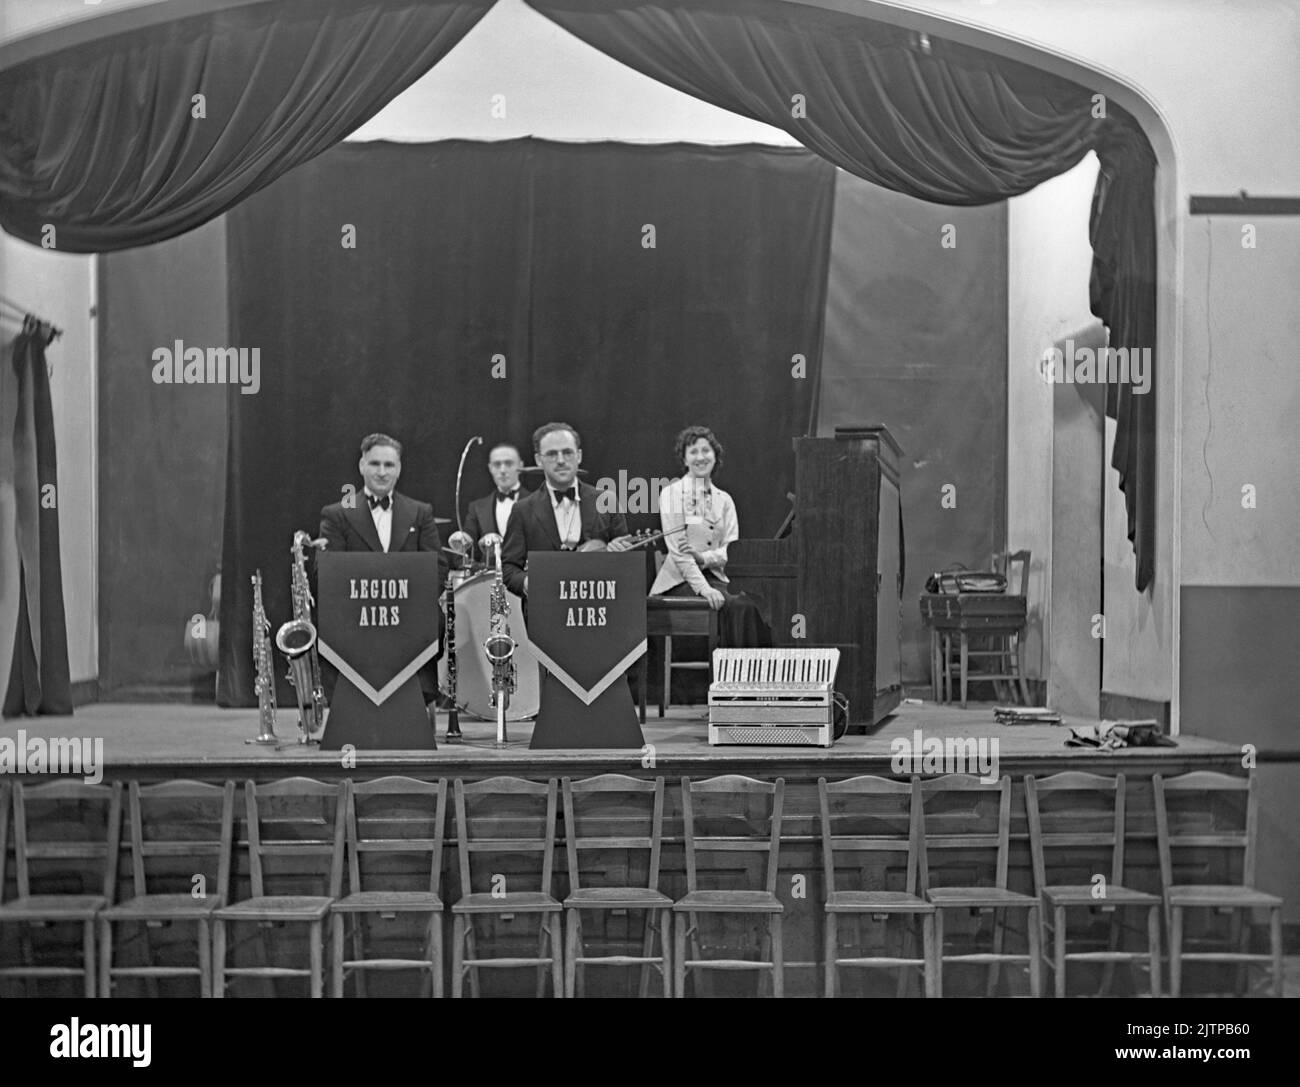 Eine britische vierköpfige Tanzband, die Legion Airs, auf der Bühne der British Legion, Twickenham, Middlesex, Großbritannien im Juli 1939. Frühe Tanz- und Swing-Bands hatten ihre Blütezeit in Großbritannien während der Jahre 1920s–30s. Bands spielten in Tanzsälen und Hotelballsälen. Sie spielten melodische, gute-Zeit-Musik und einzelne Spieler spielten in mehreren Bands. Dieses Bild stammt aus einem alten Glas-Negativ – einem Vintage-Foto aus dem Jahr 1930s. Stockfoto